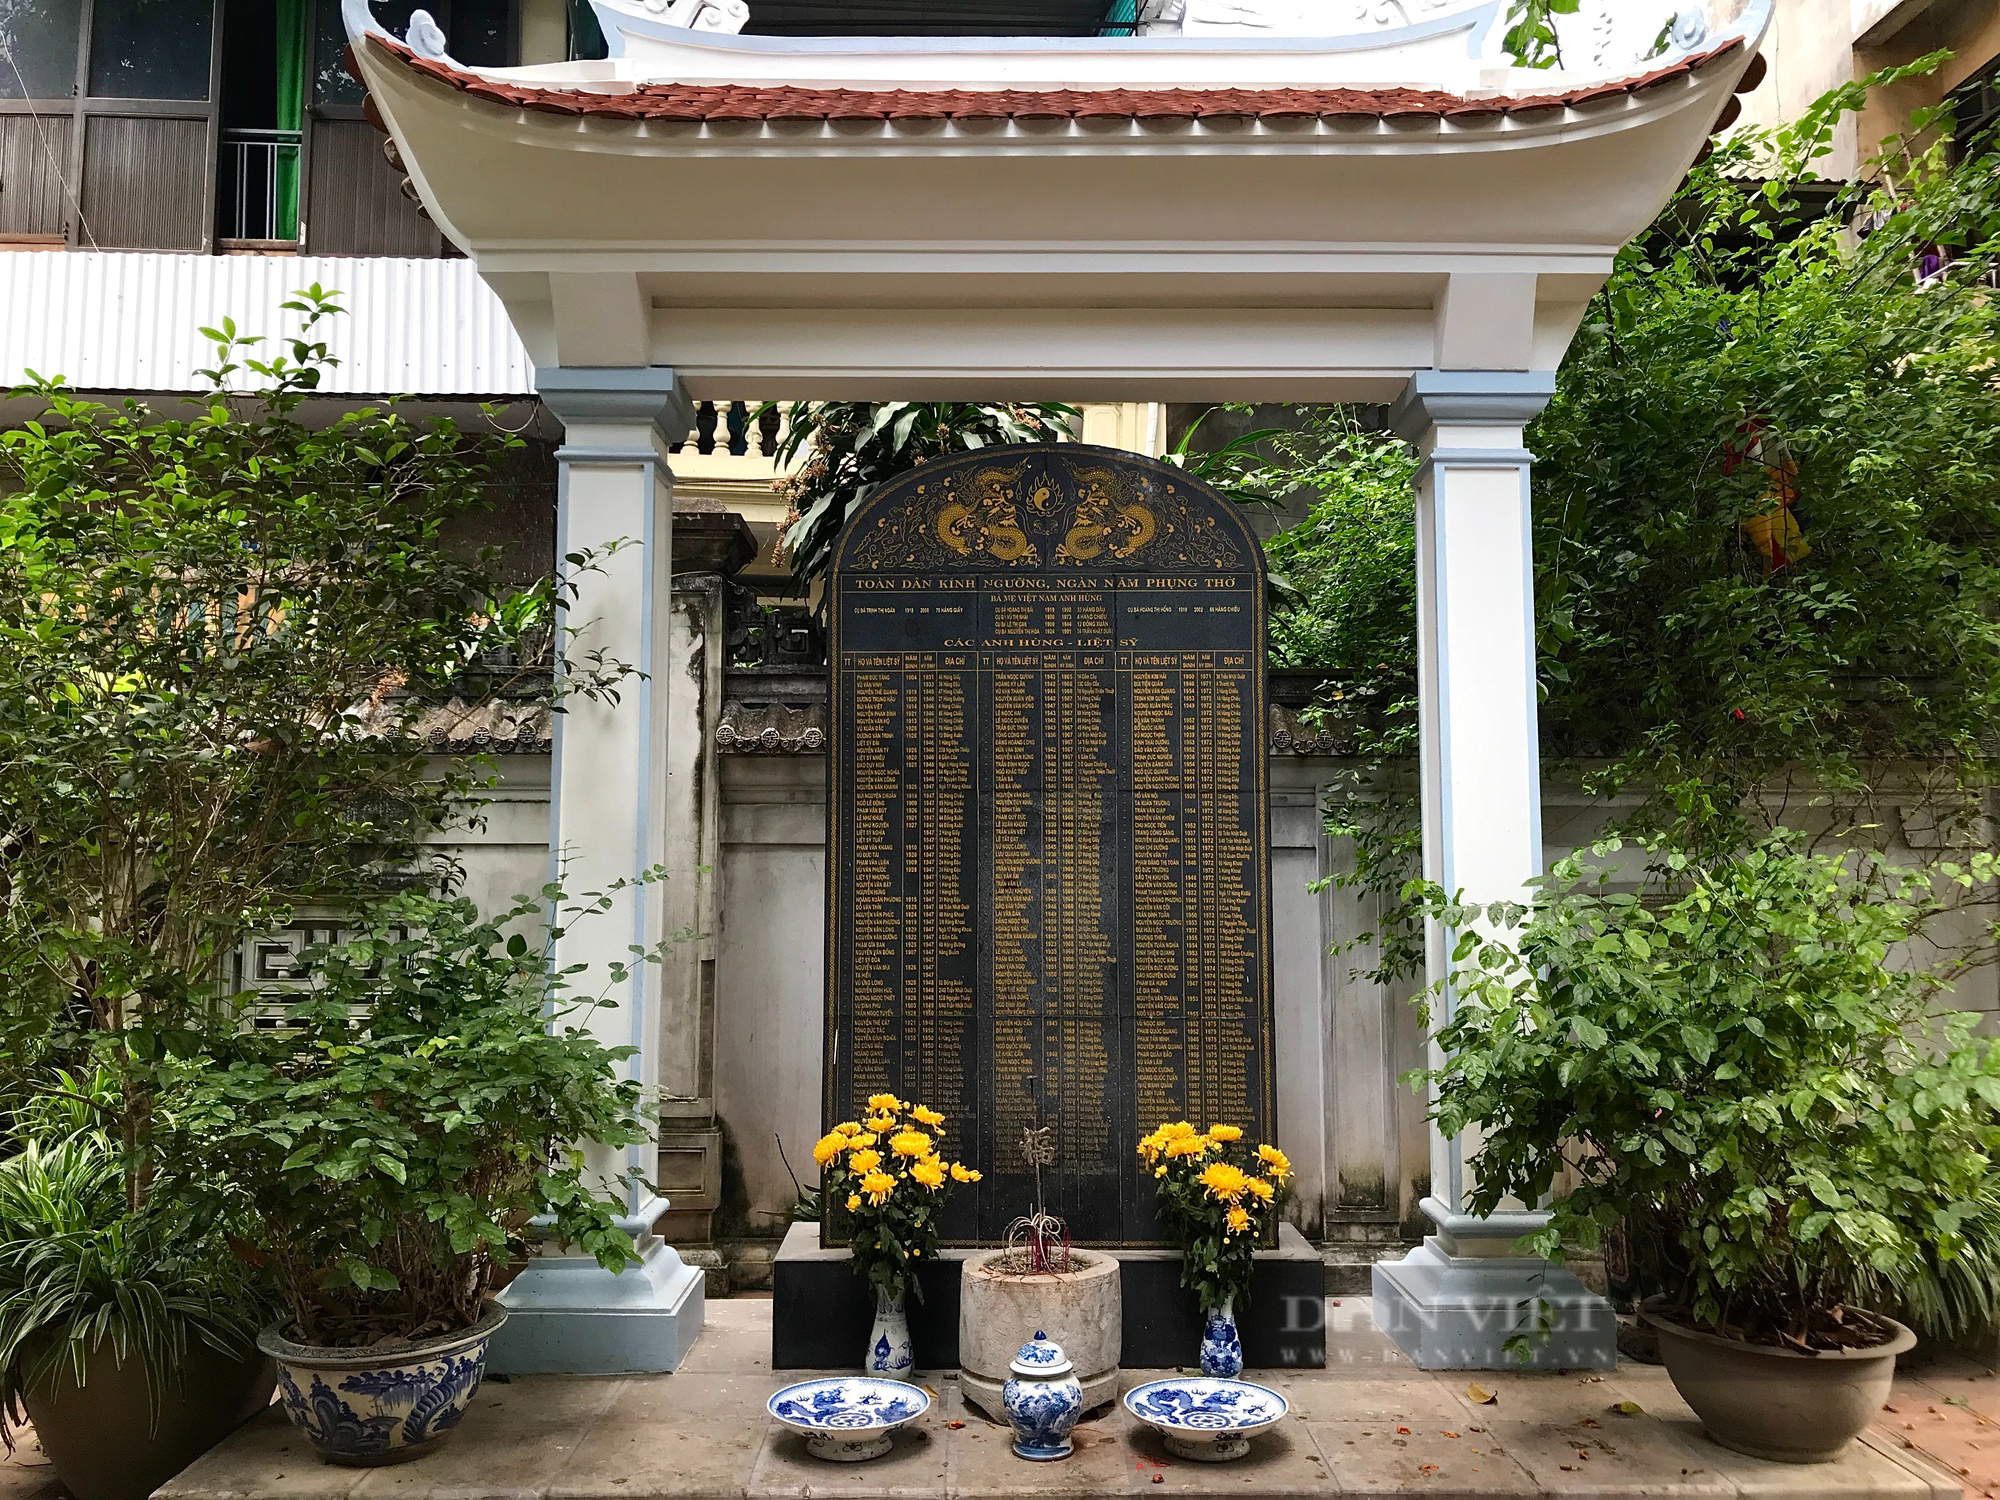 Nét cổ kính bên trong ngôi chùa cổ 800 tuổi giữa lòng Hà Nội - Ảnh 6.